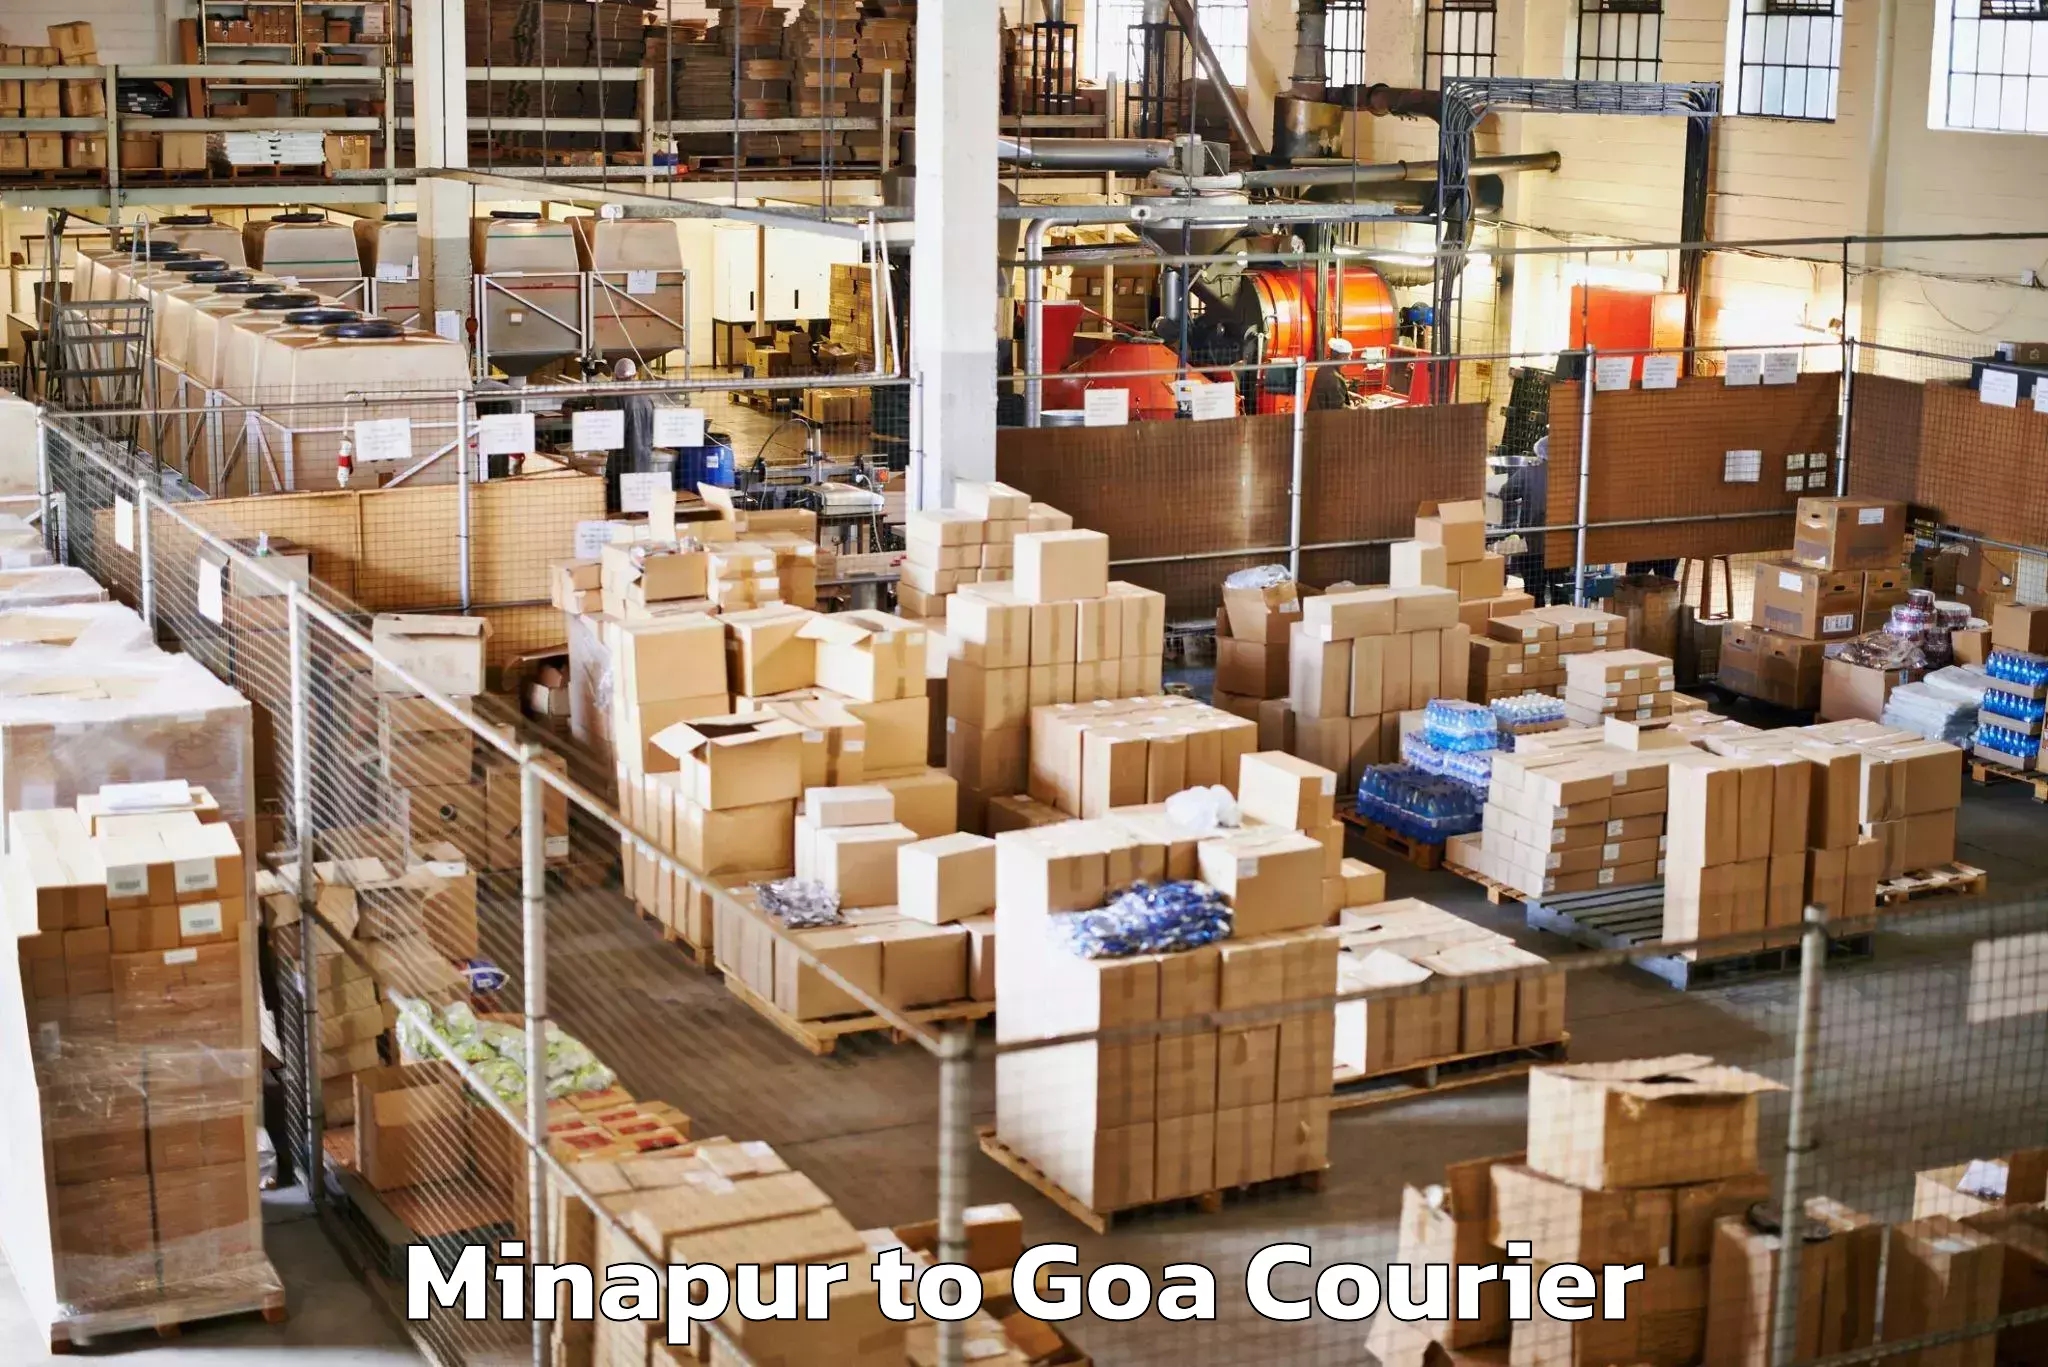 Baggage transport professionals Minapur to Goa